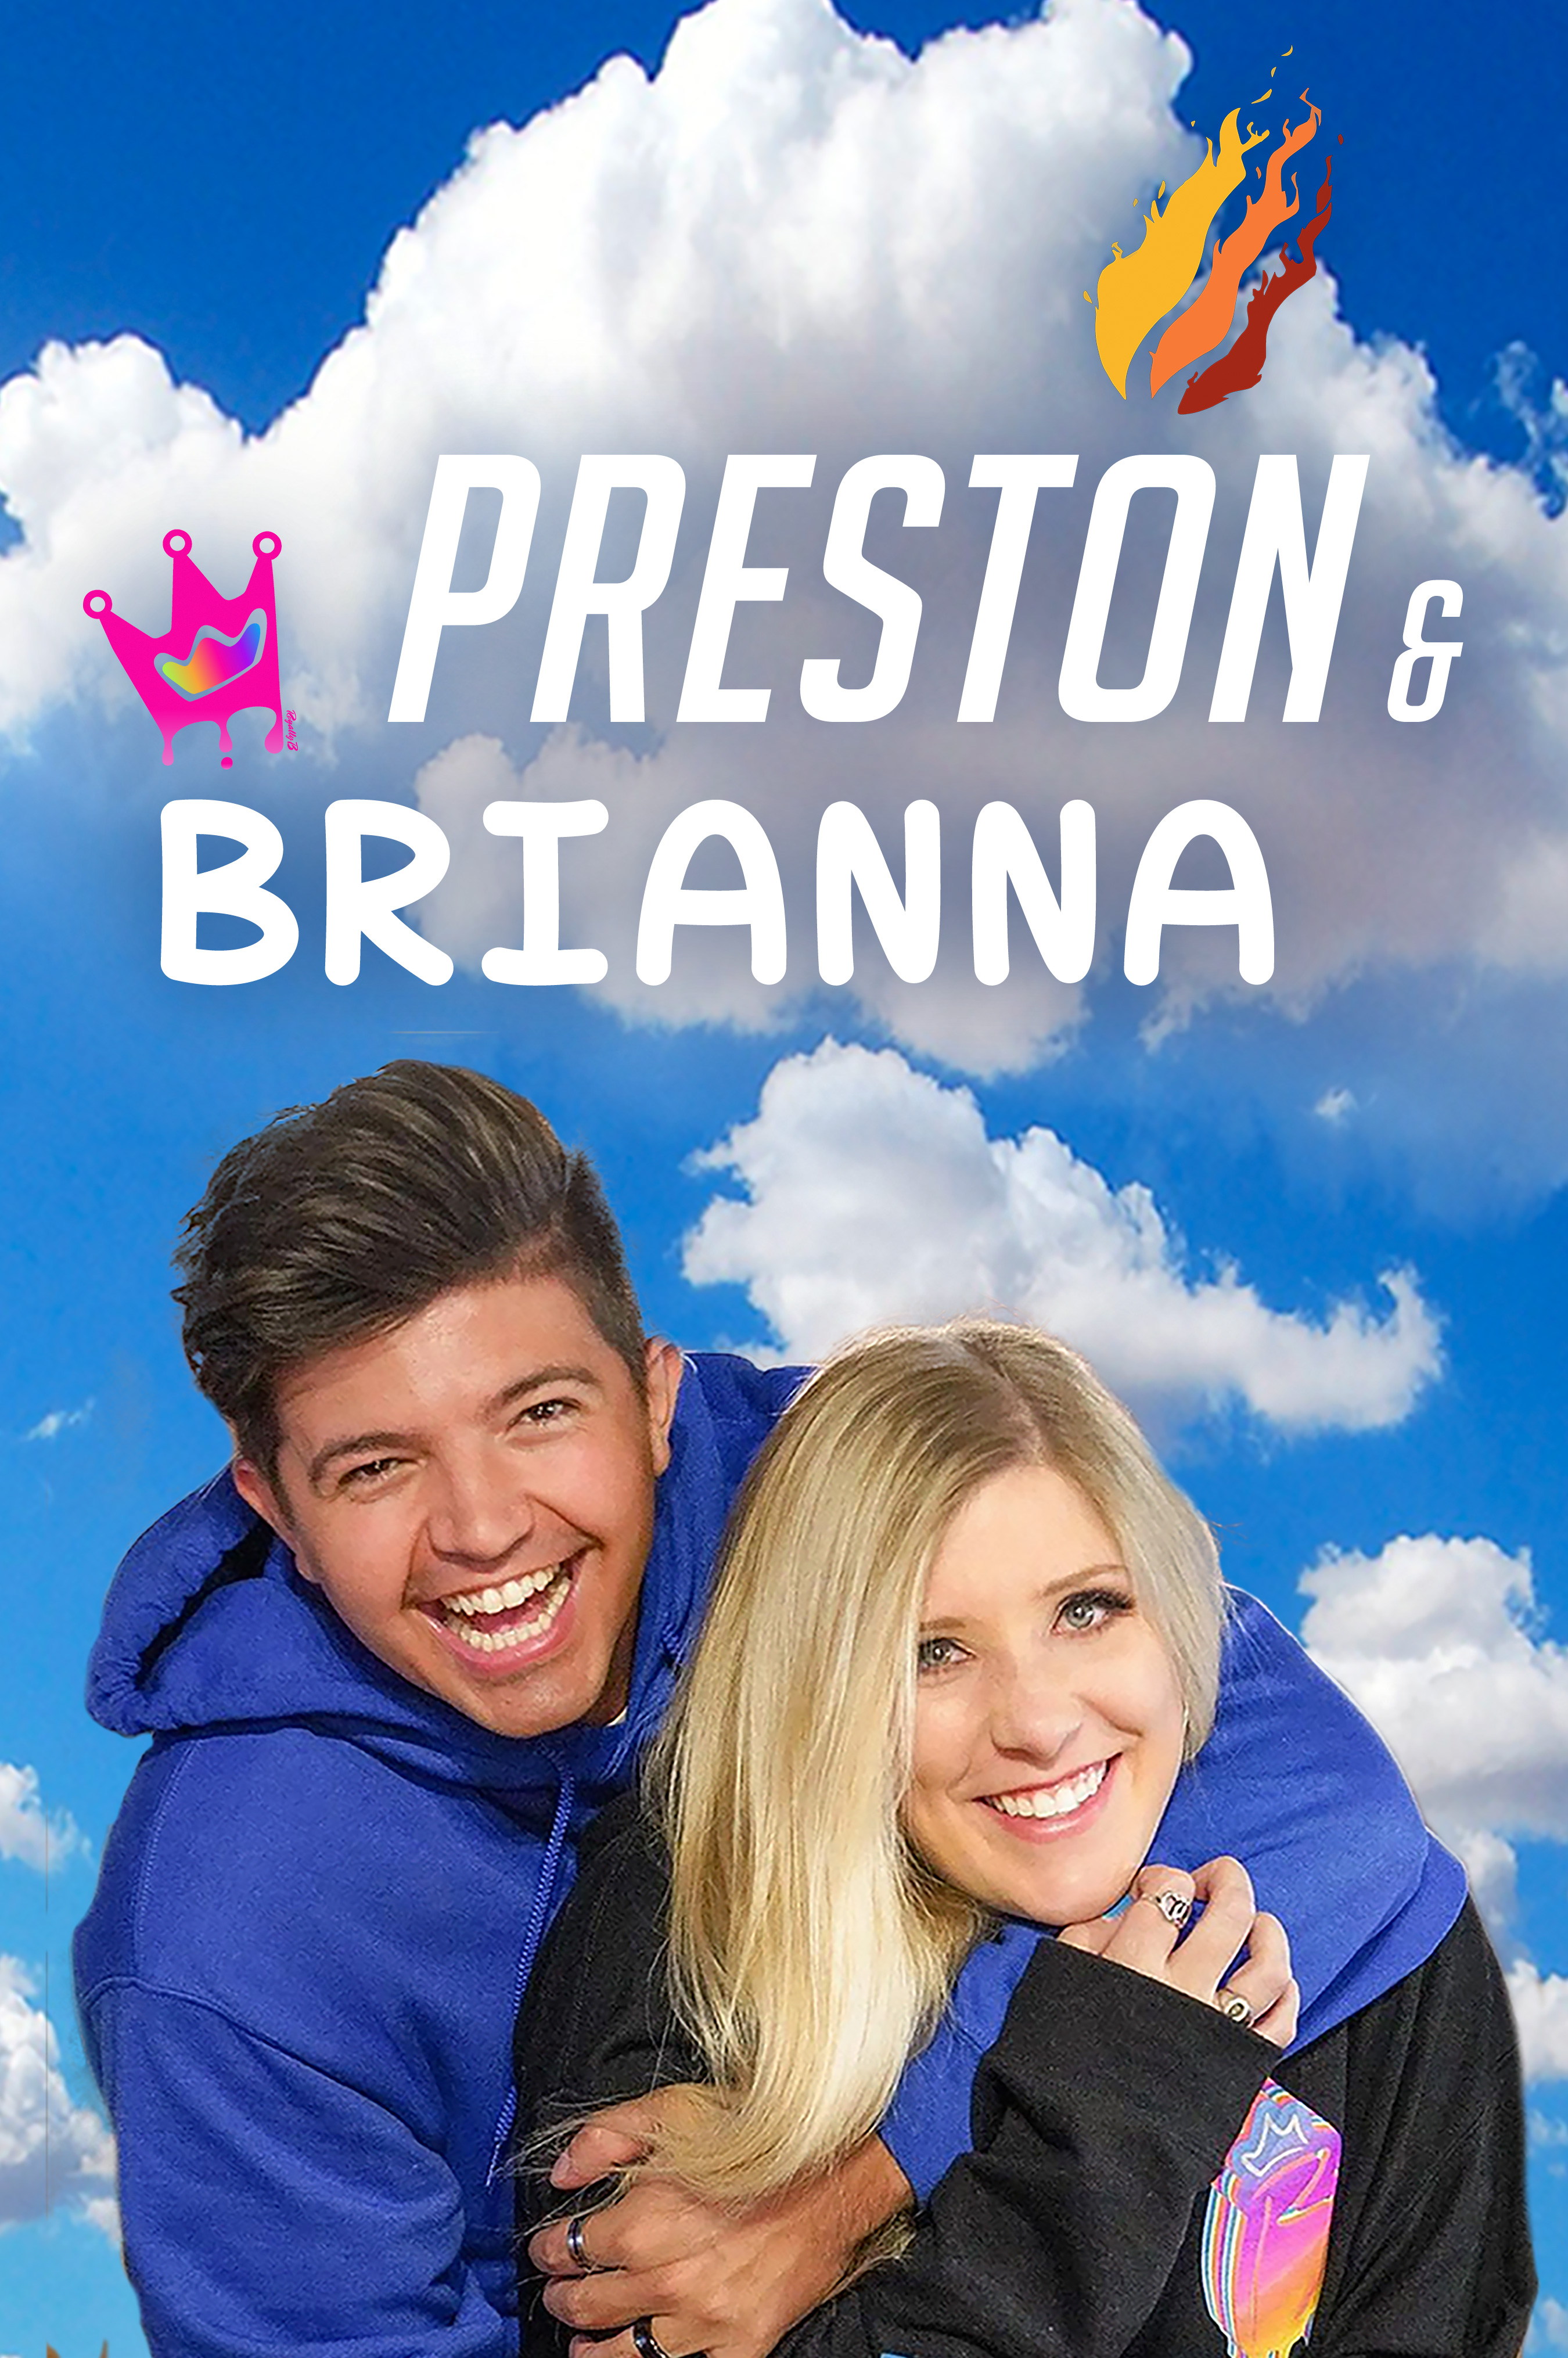 Preston & Brianna